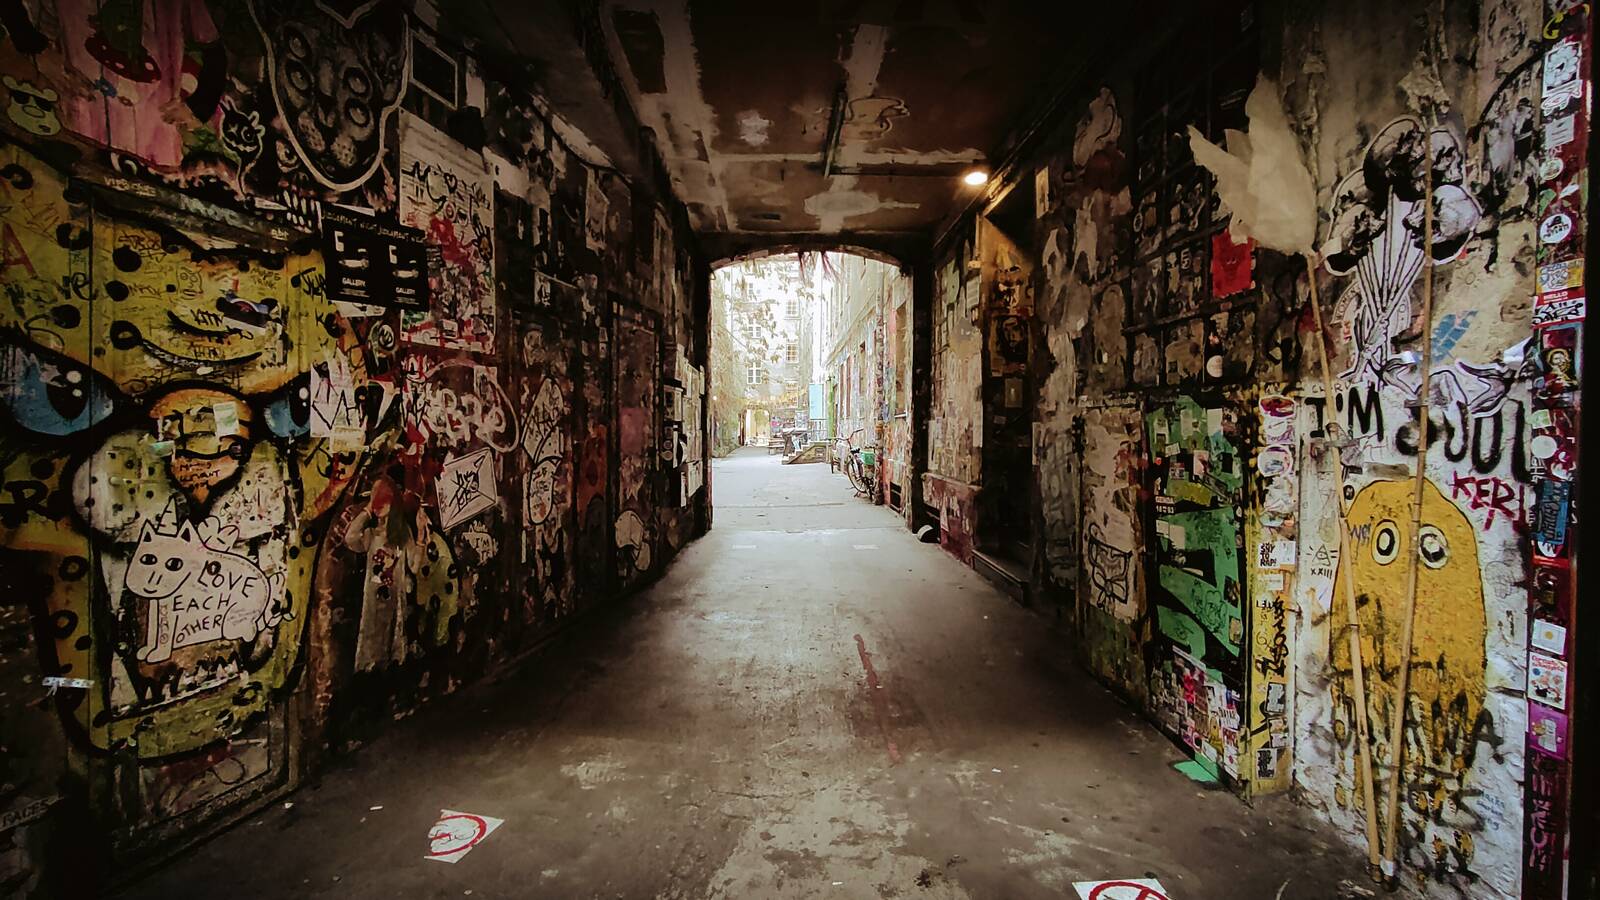 Image of Haus Schwarzenberg street-art alley by James Billings.